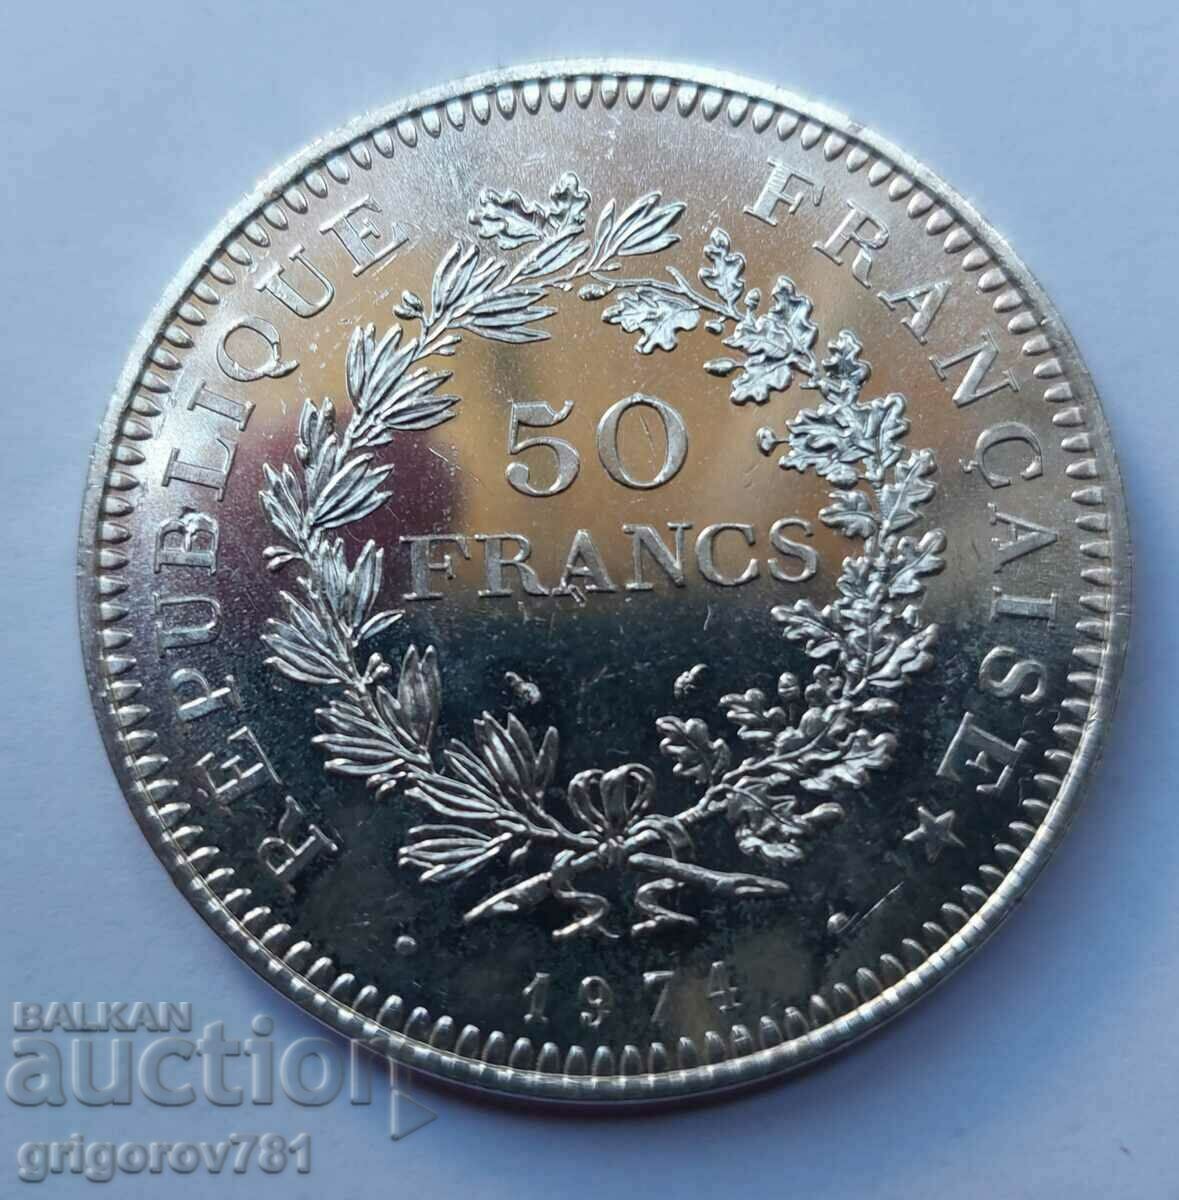 50 Franci Argint Franta 1974 - Moneda de argint #19